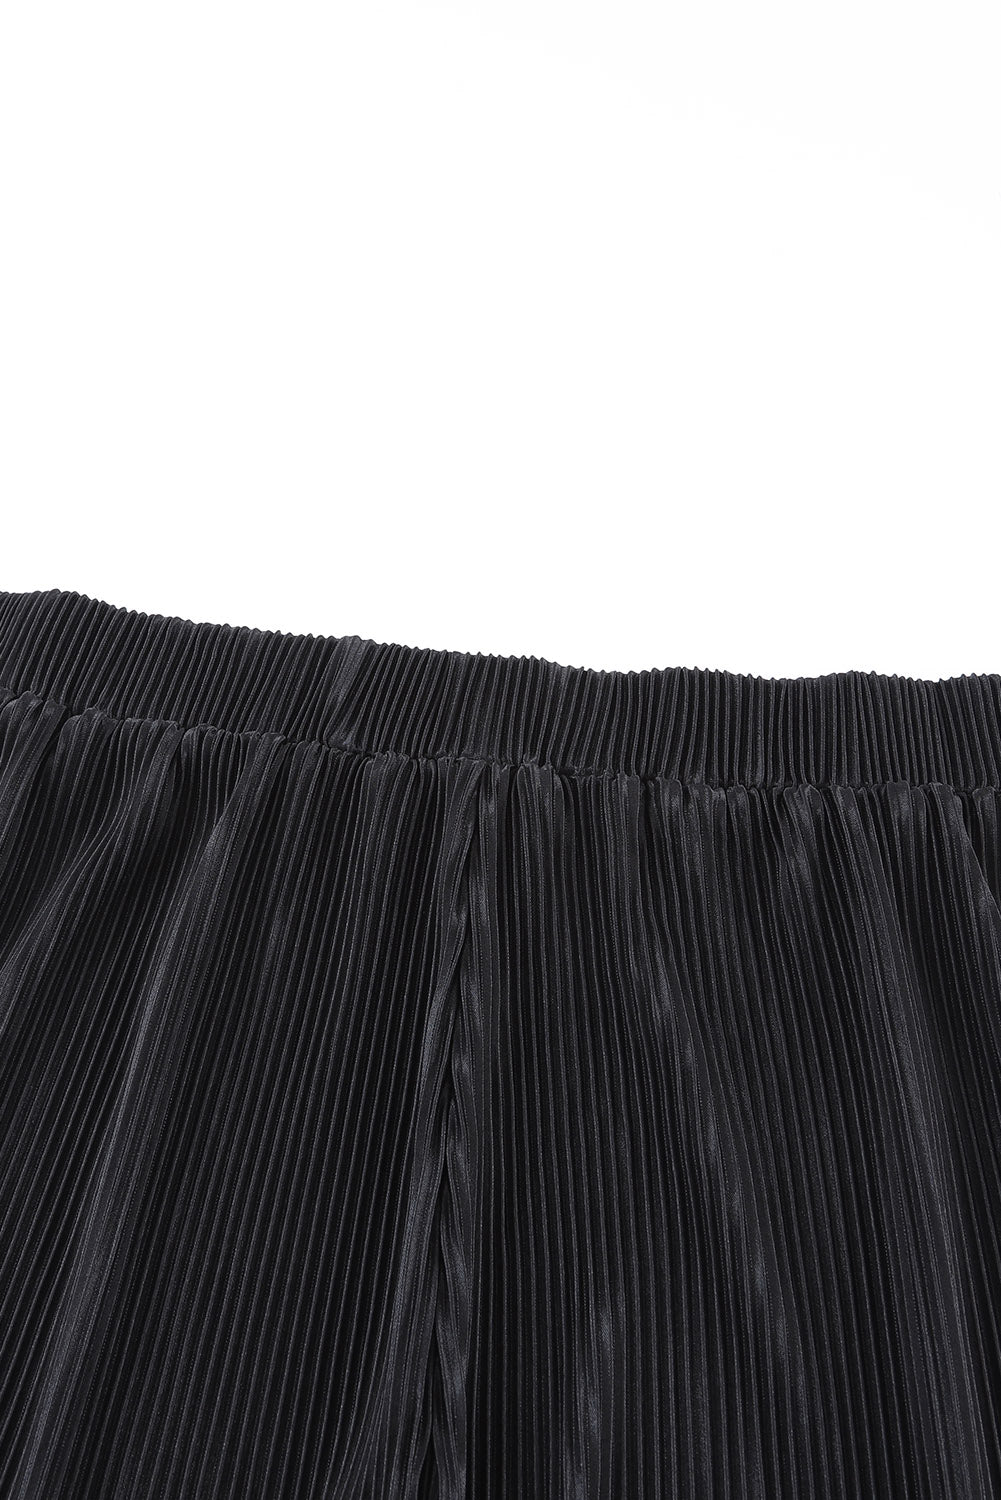 Ensemble chemise plissée noire à manches 3/4 et short taille haute